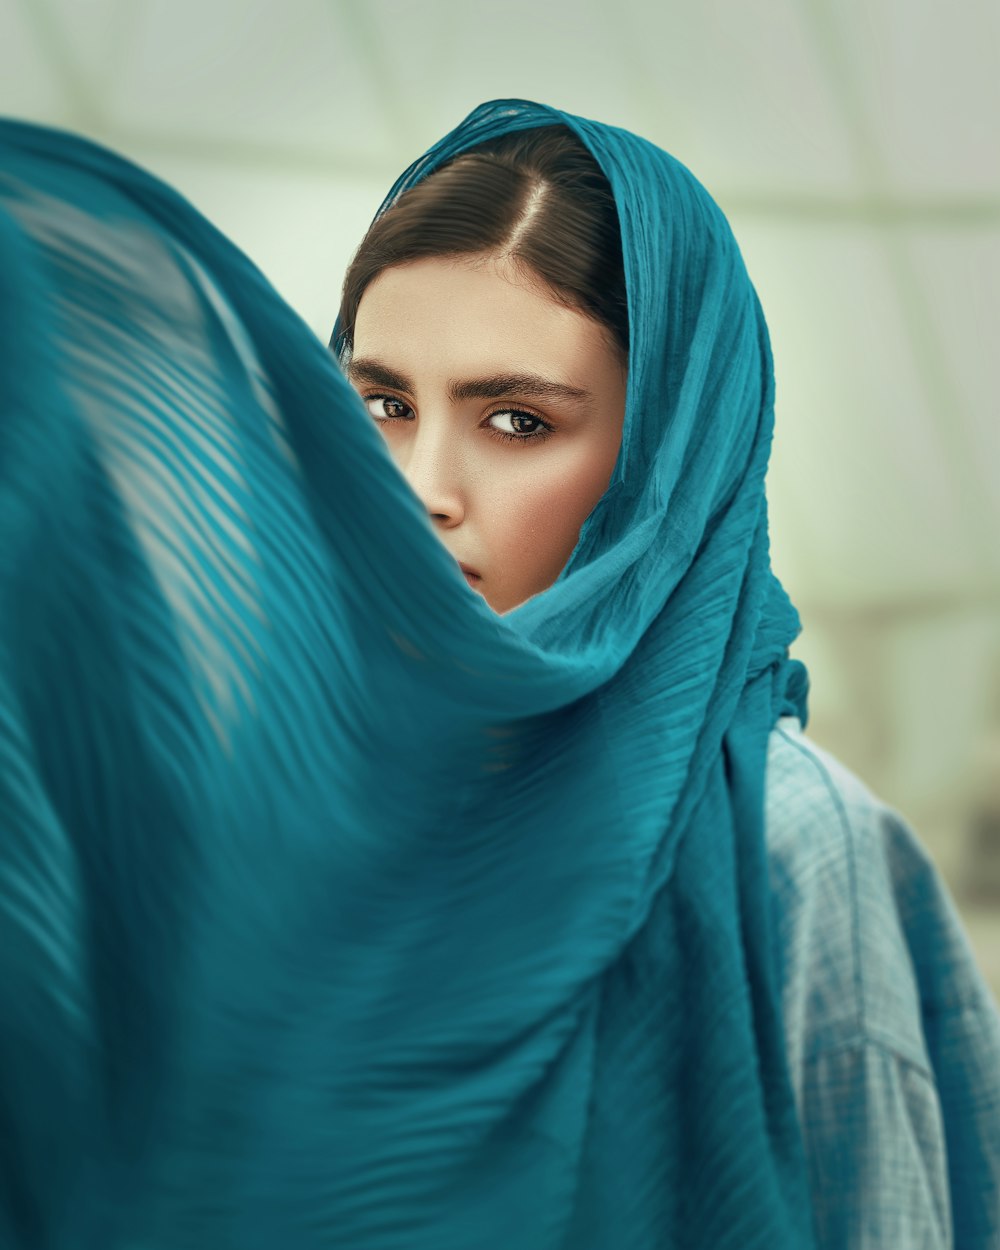 Femme en hijab bleu couvrant son visage avec un textile bleu